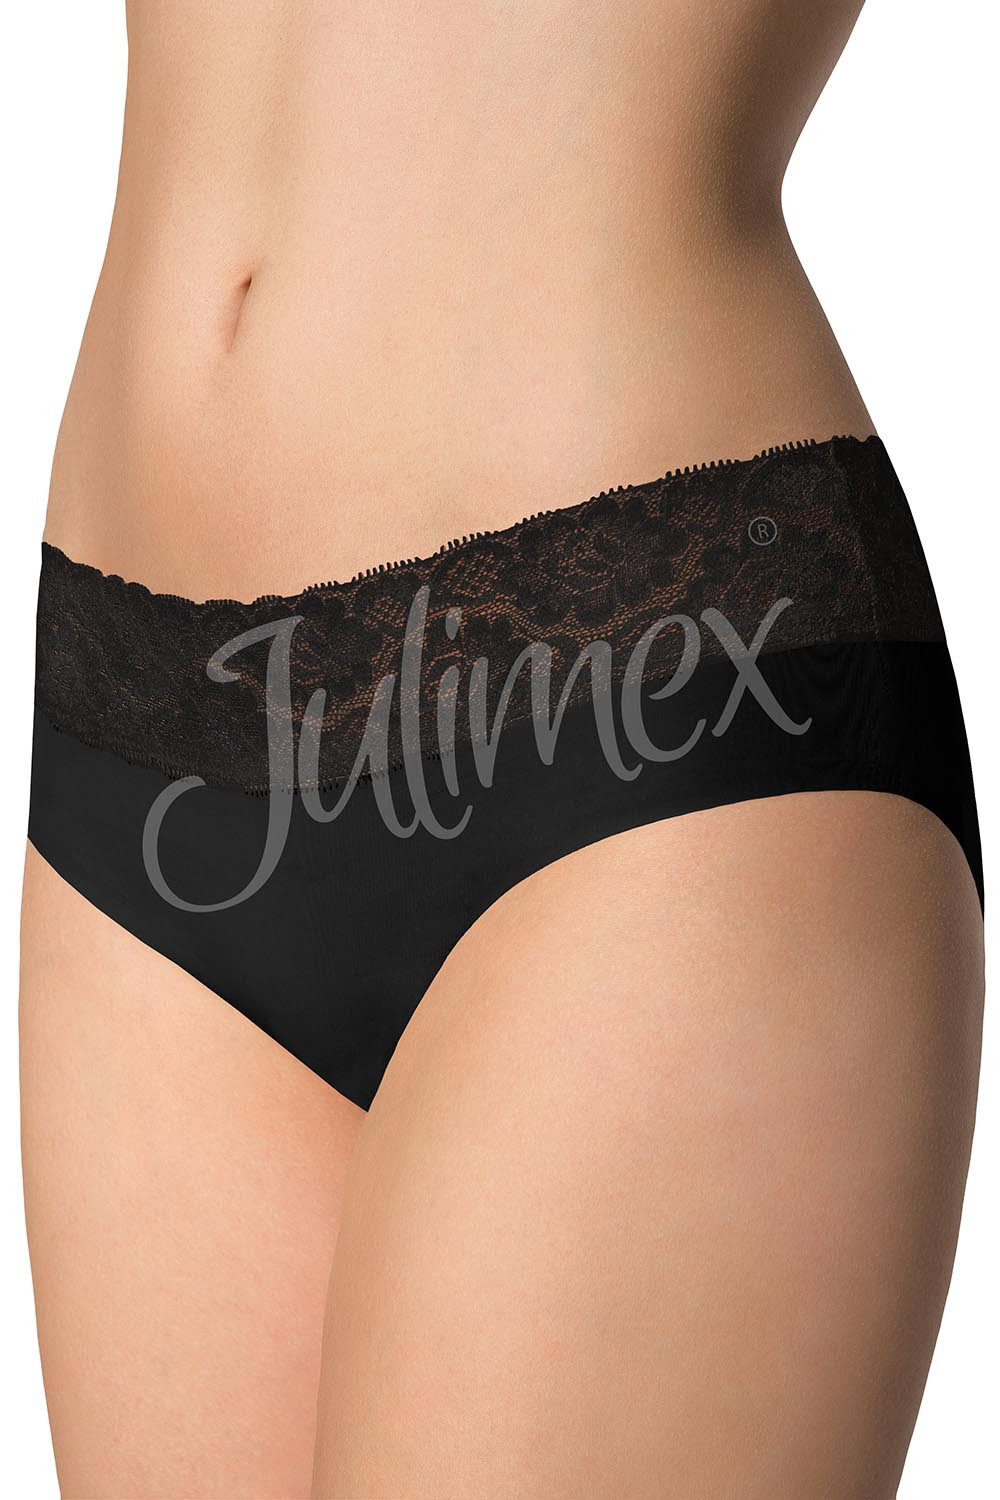 Julimex Hipster panty kolor:czarny XL